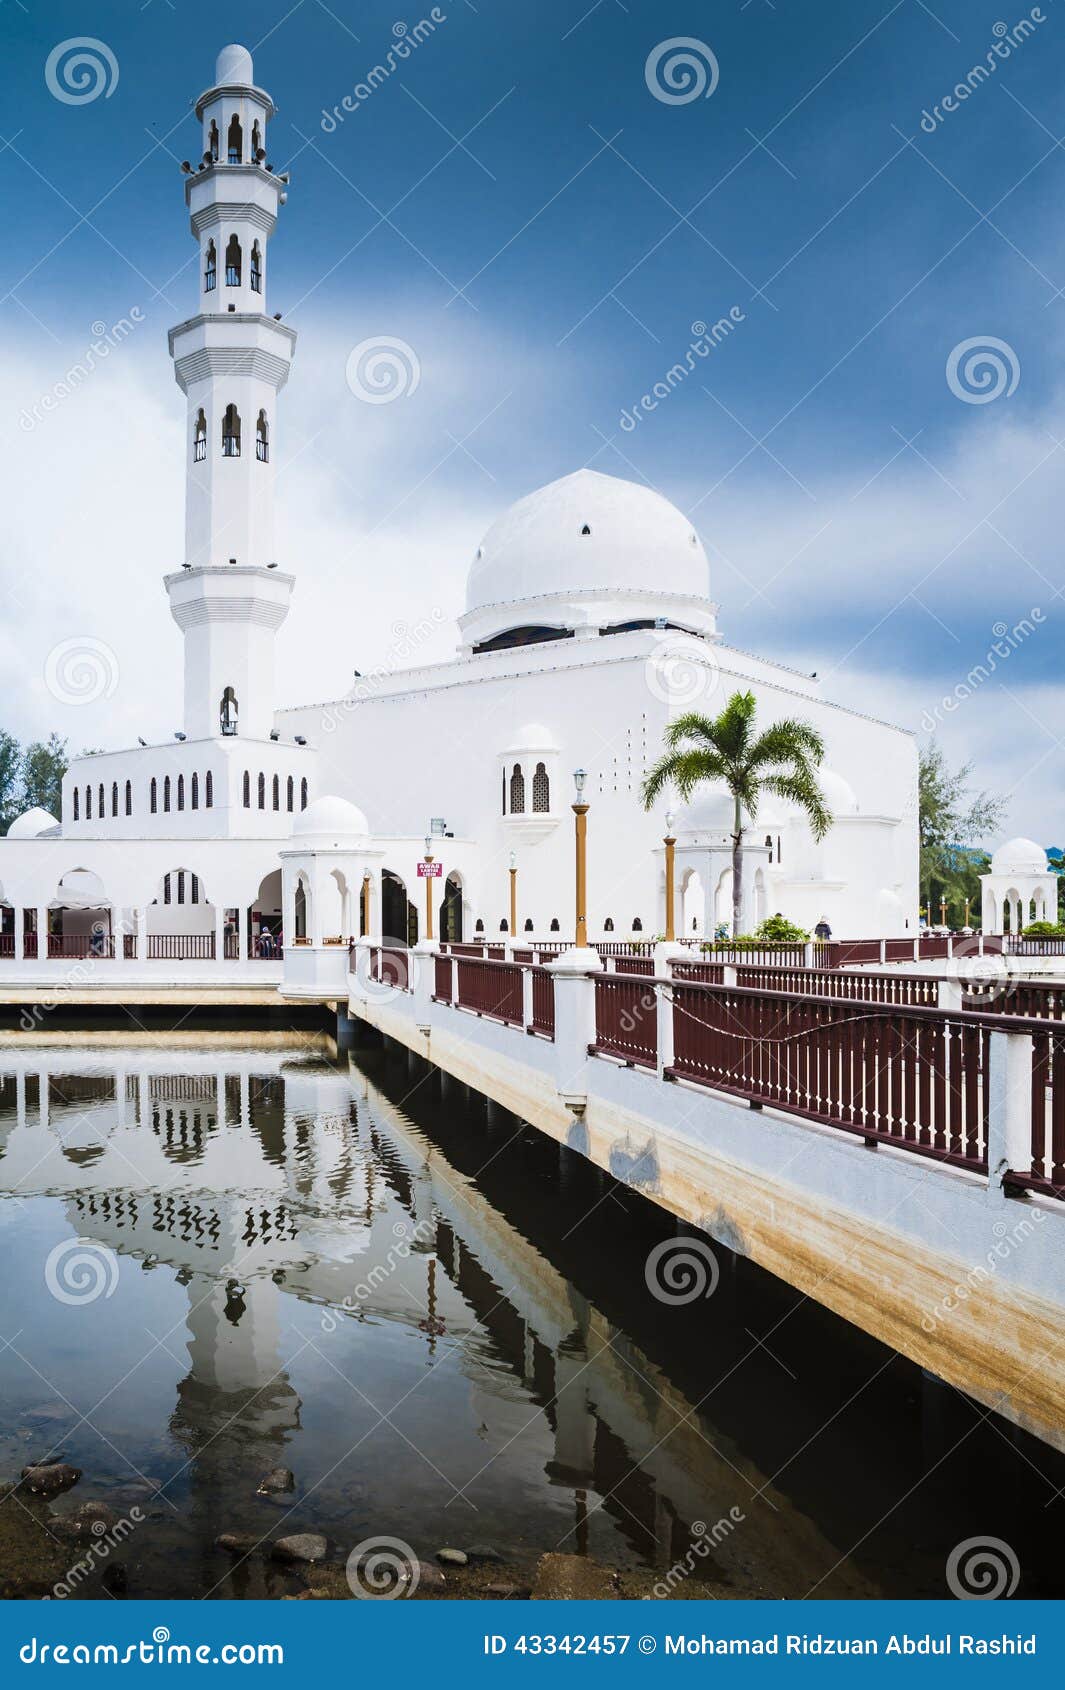 Terapung terengganu masjid